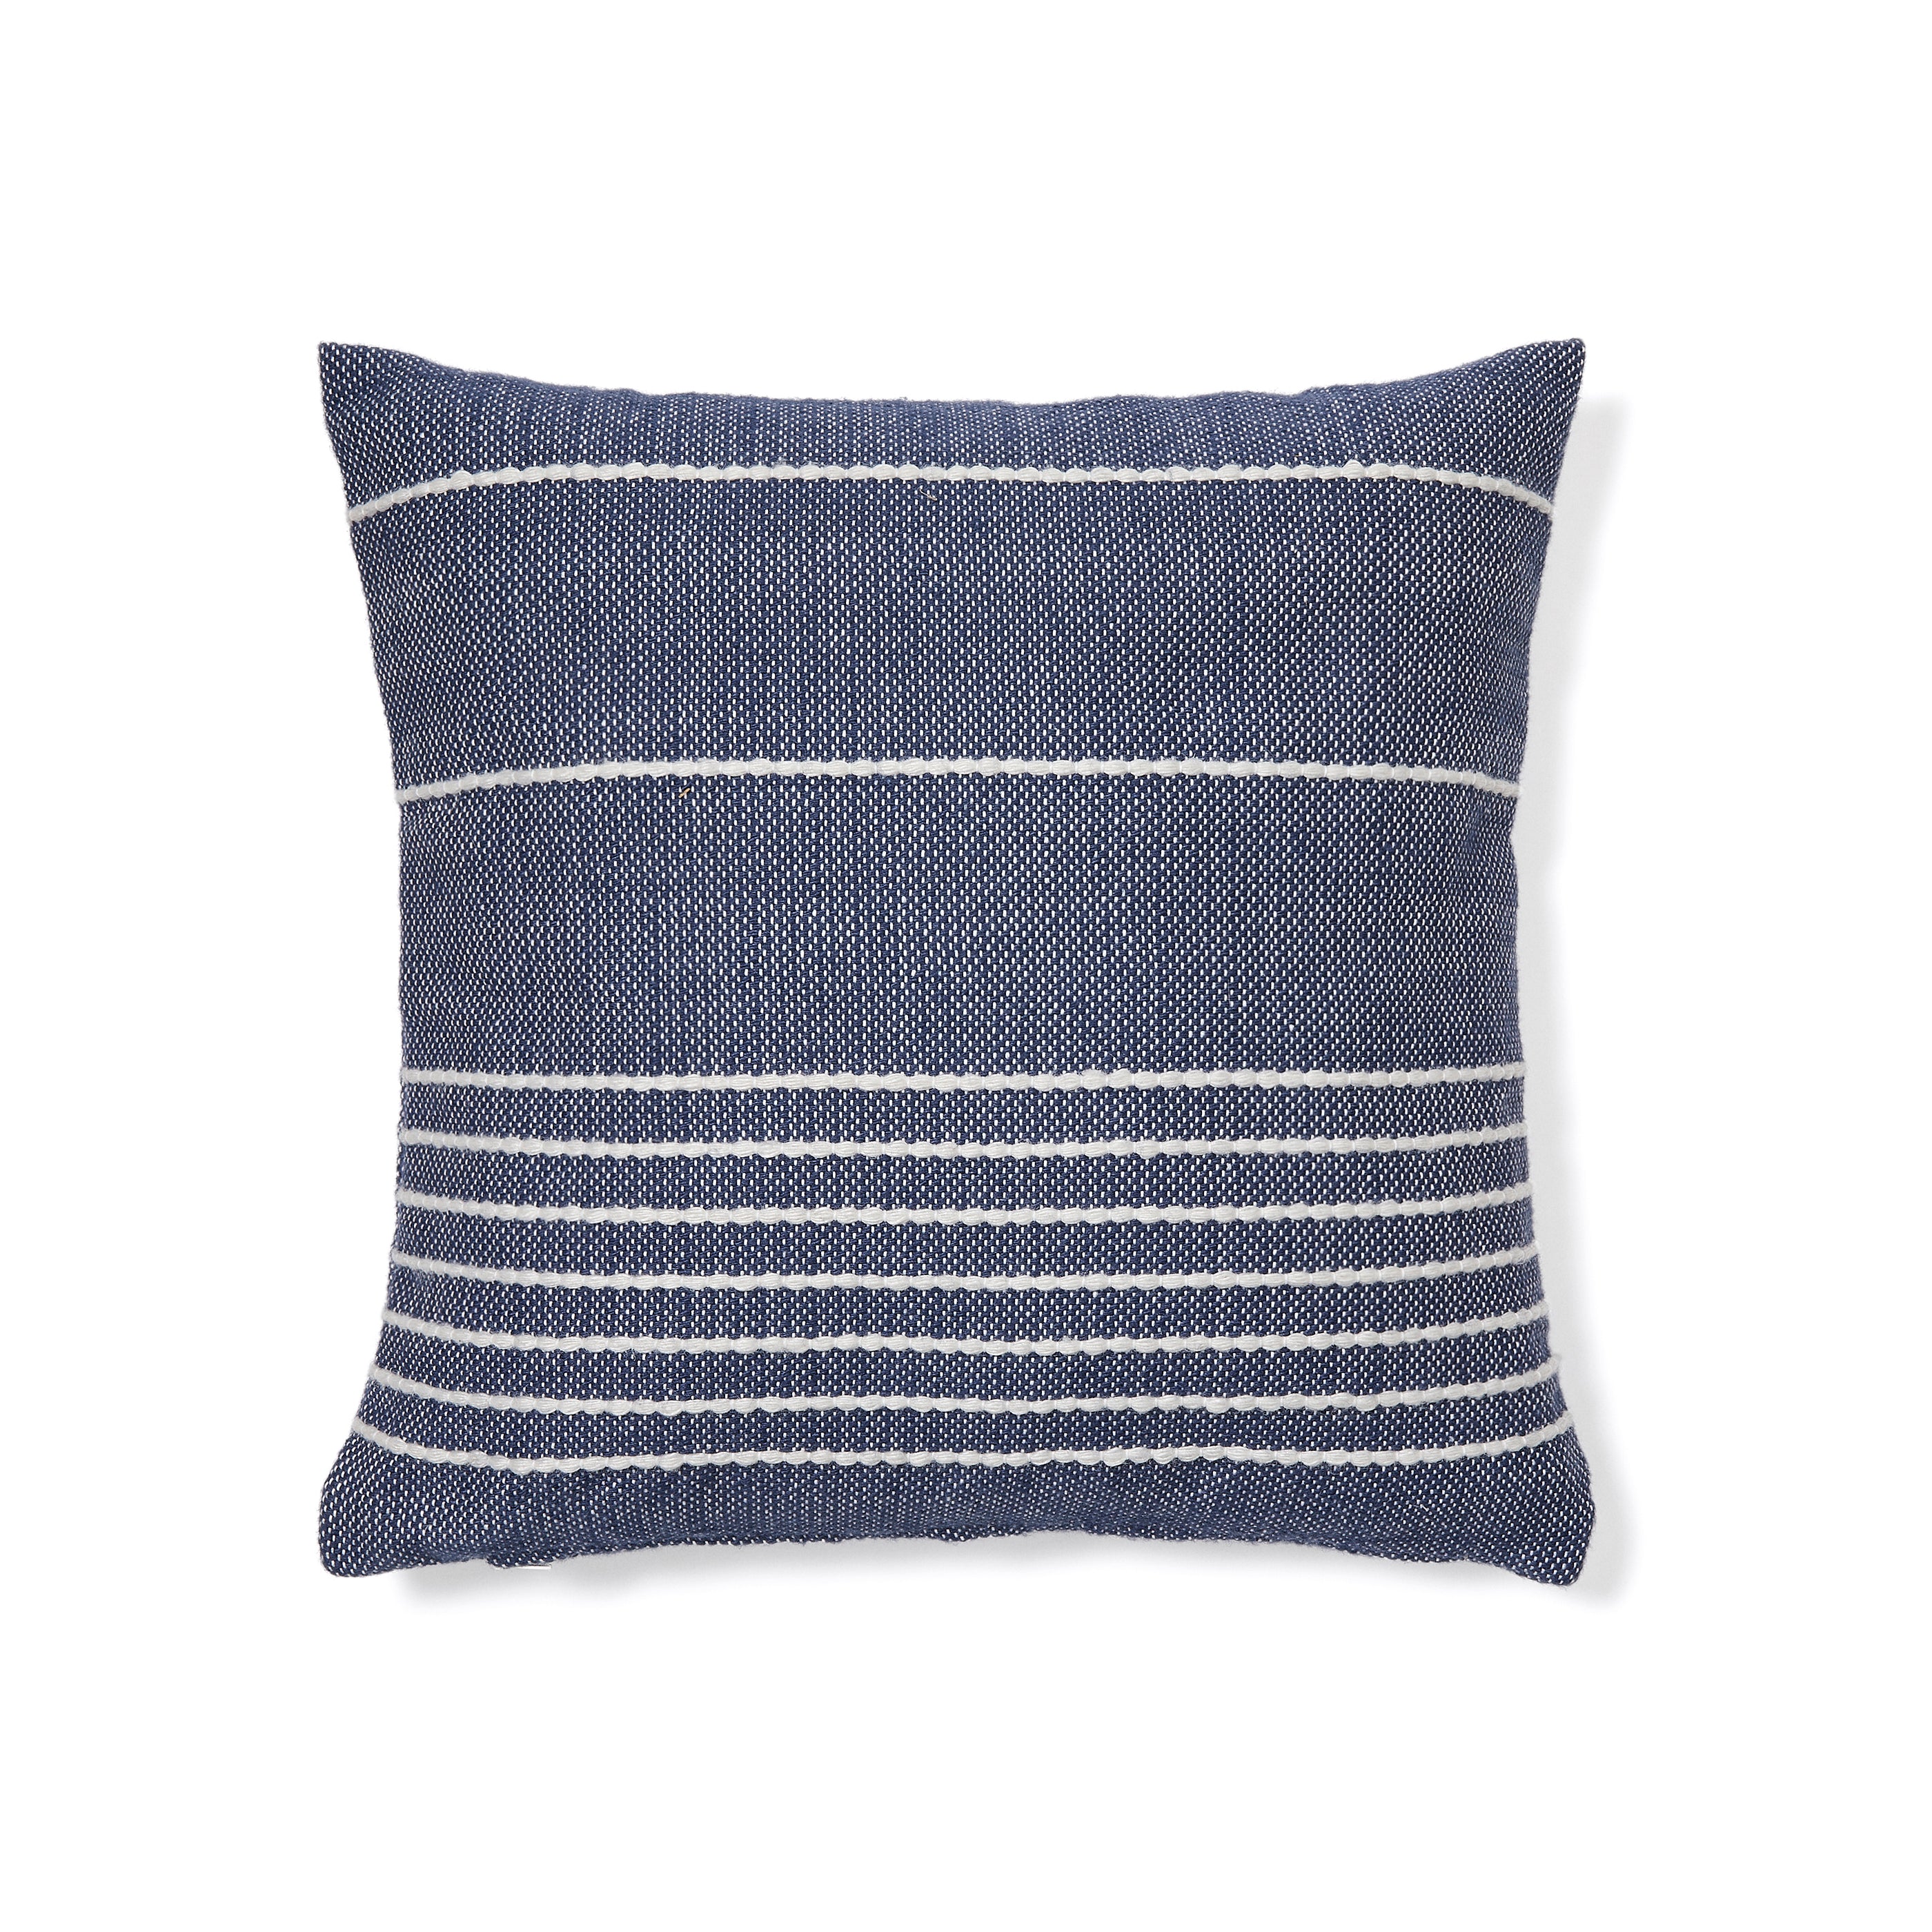 Polp blue striped cushion cover 100% PET 45 x 45 cm